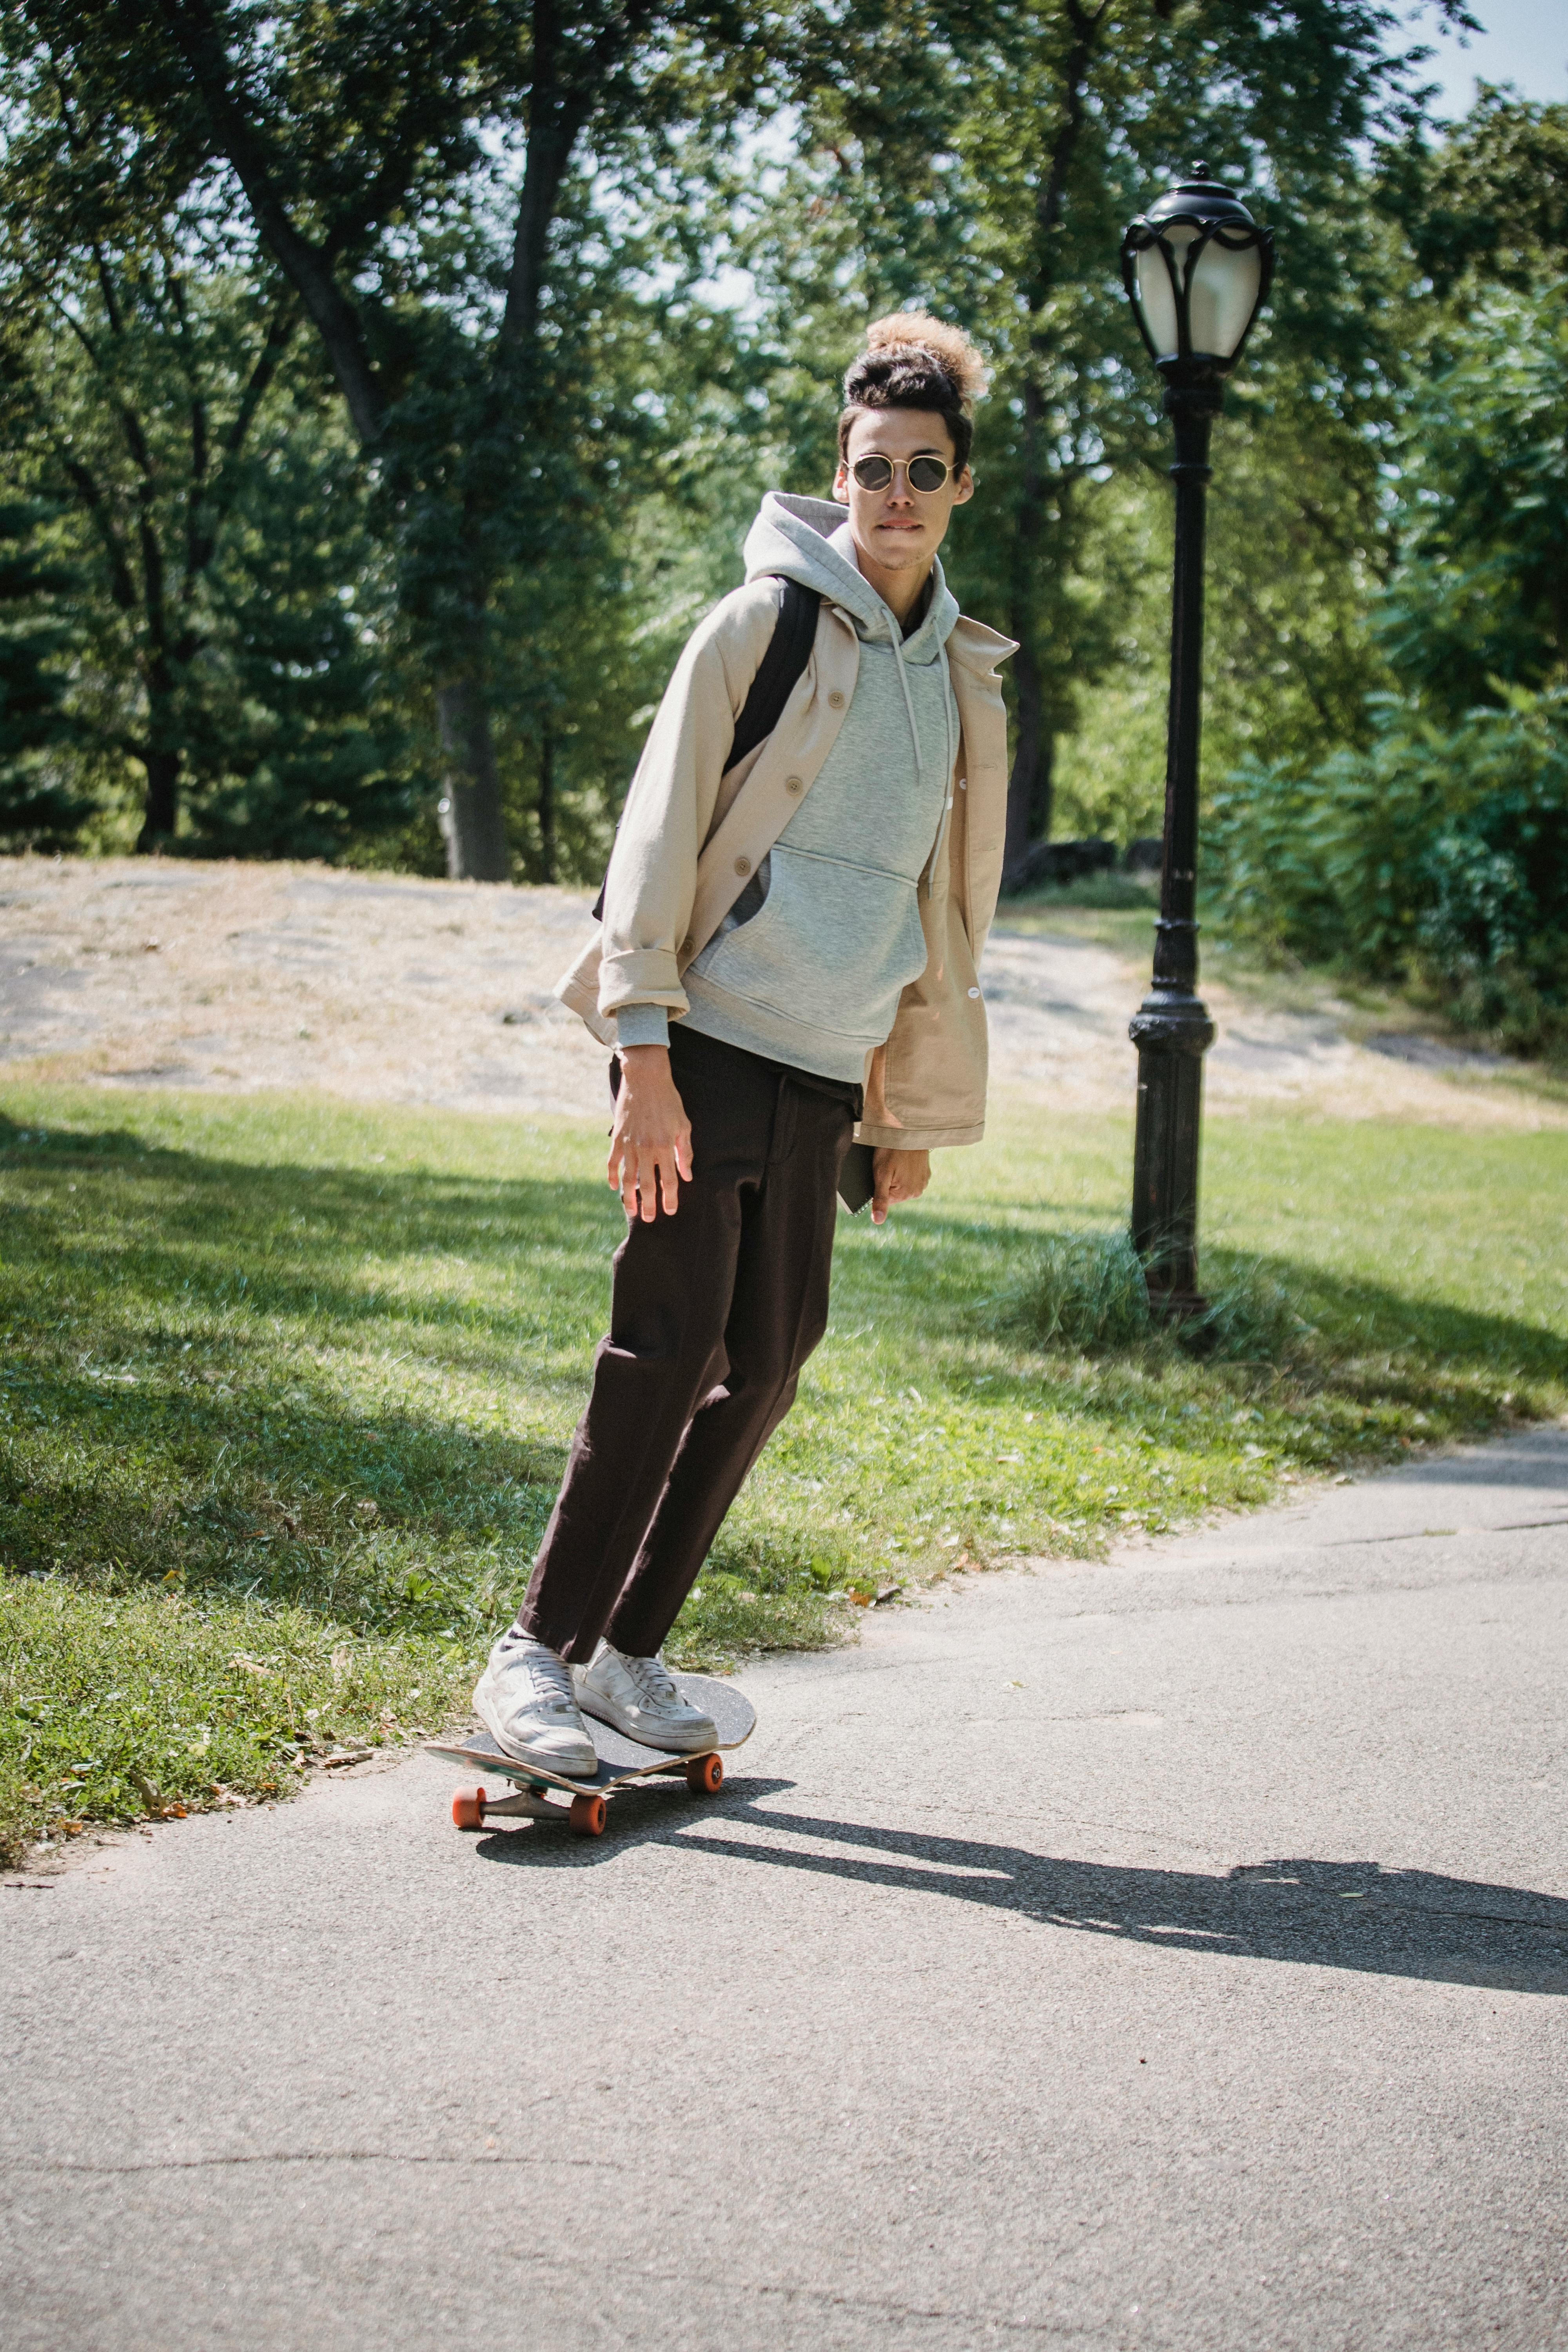 stylish man riding skateboard in park